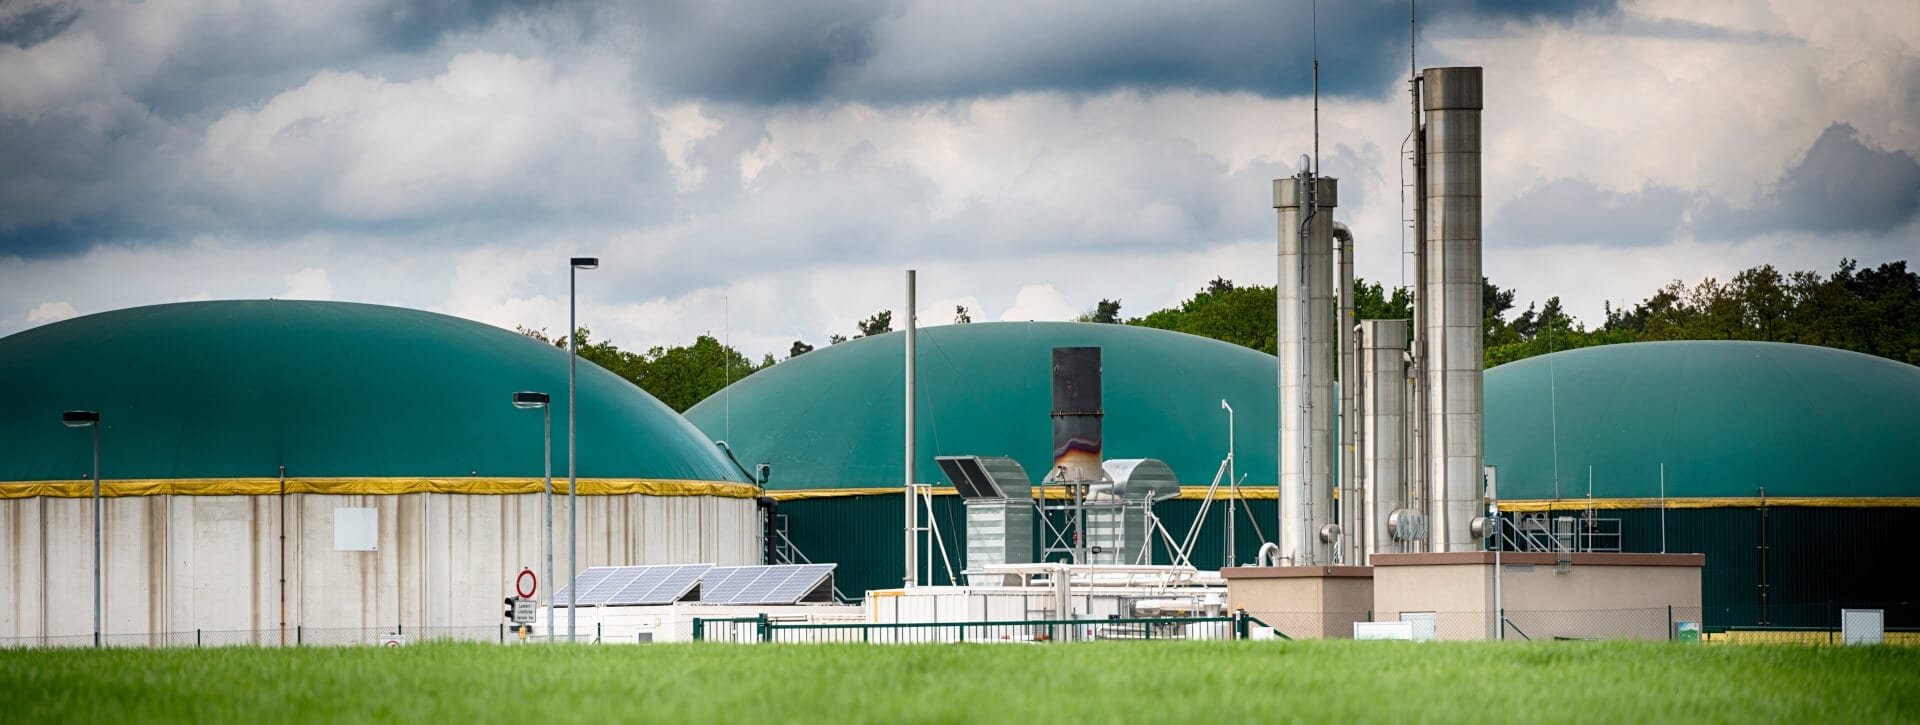 Skyline Energy Explains Biogas Materials